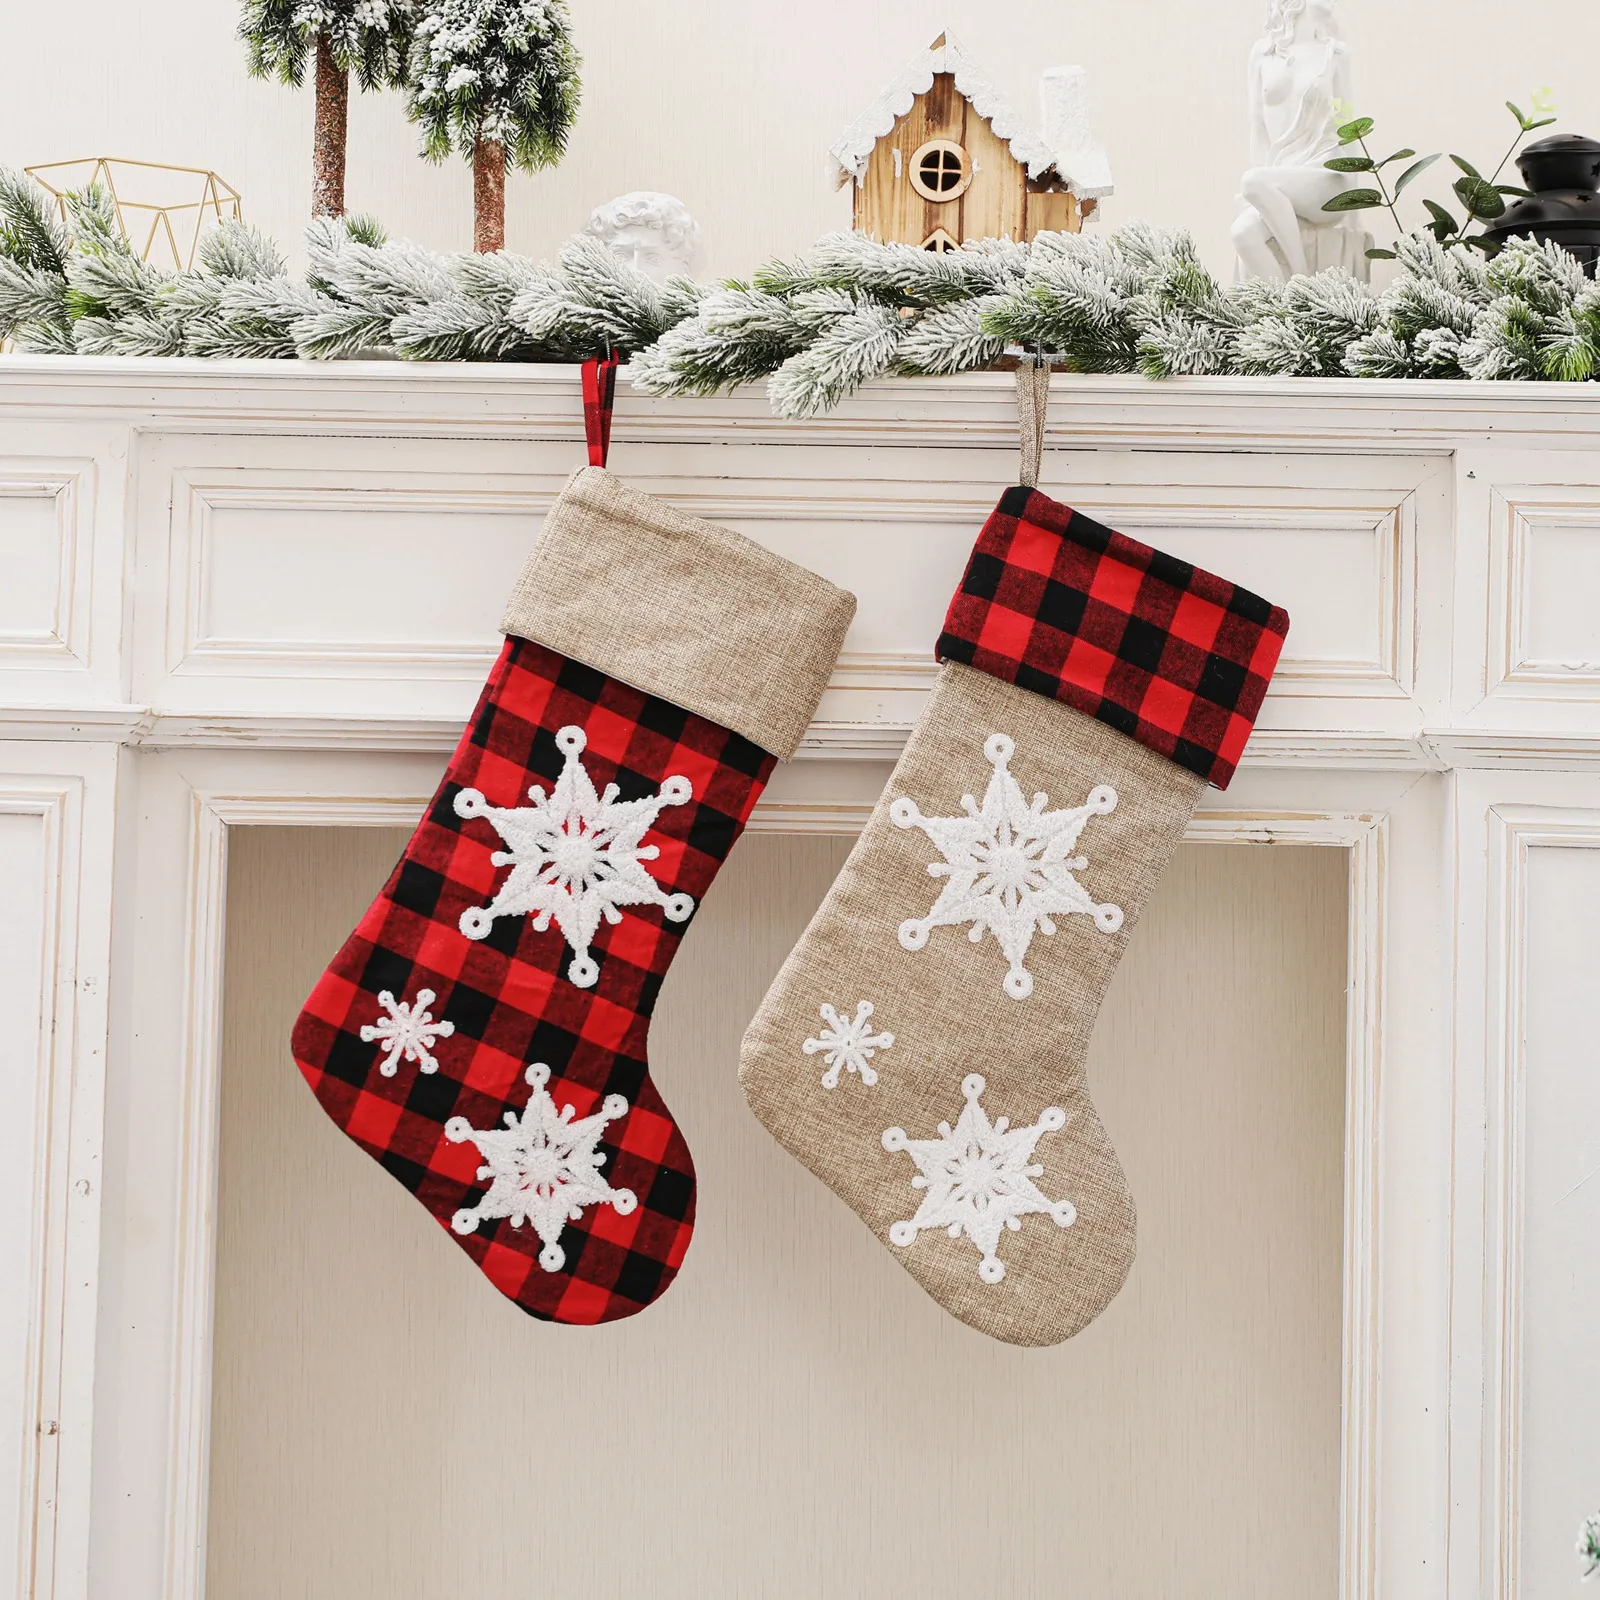 Sneeuwvlok geruite kerstkousen Kerstmis Tree Hangende decoratie ornamenten open haard sokken snoepcadeauzak RRB16149